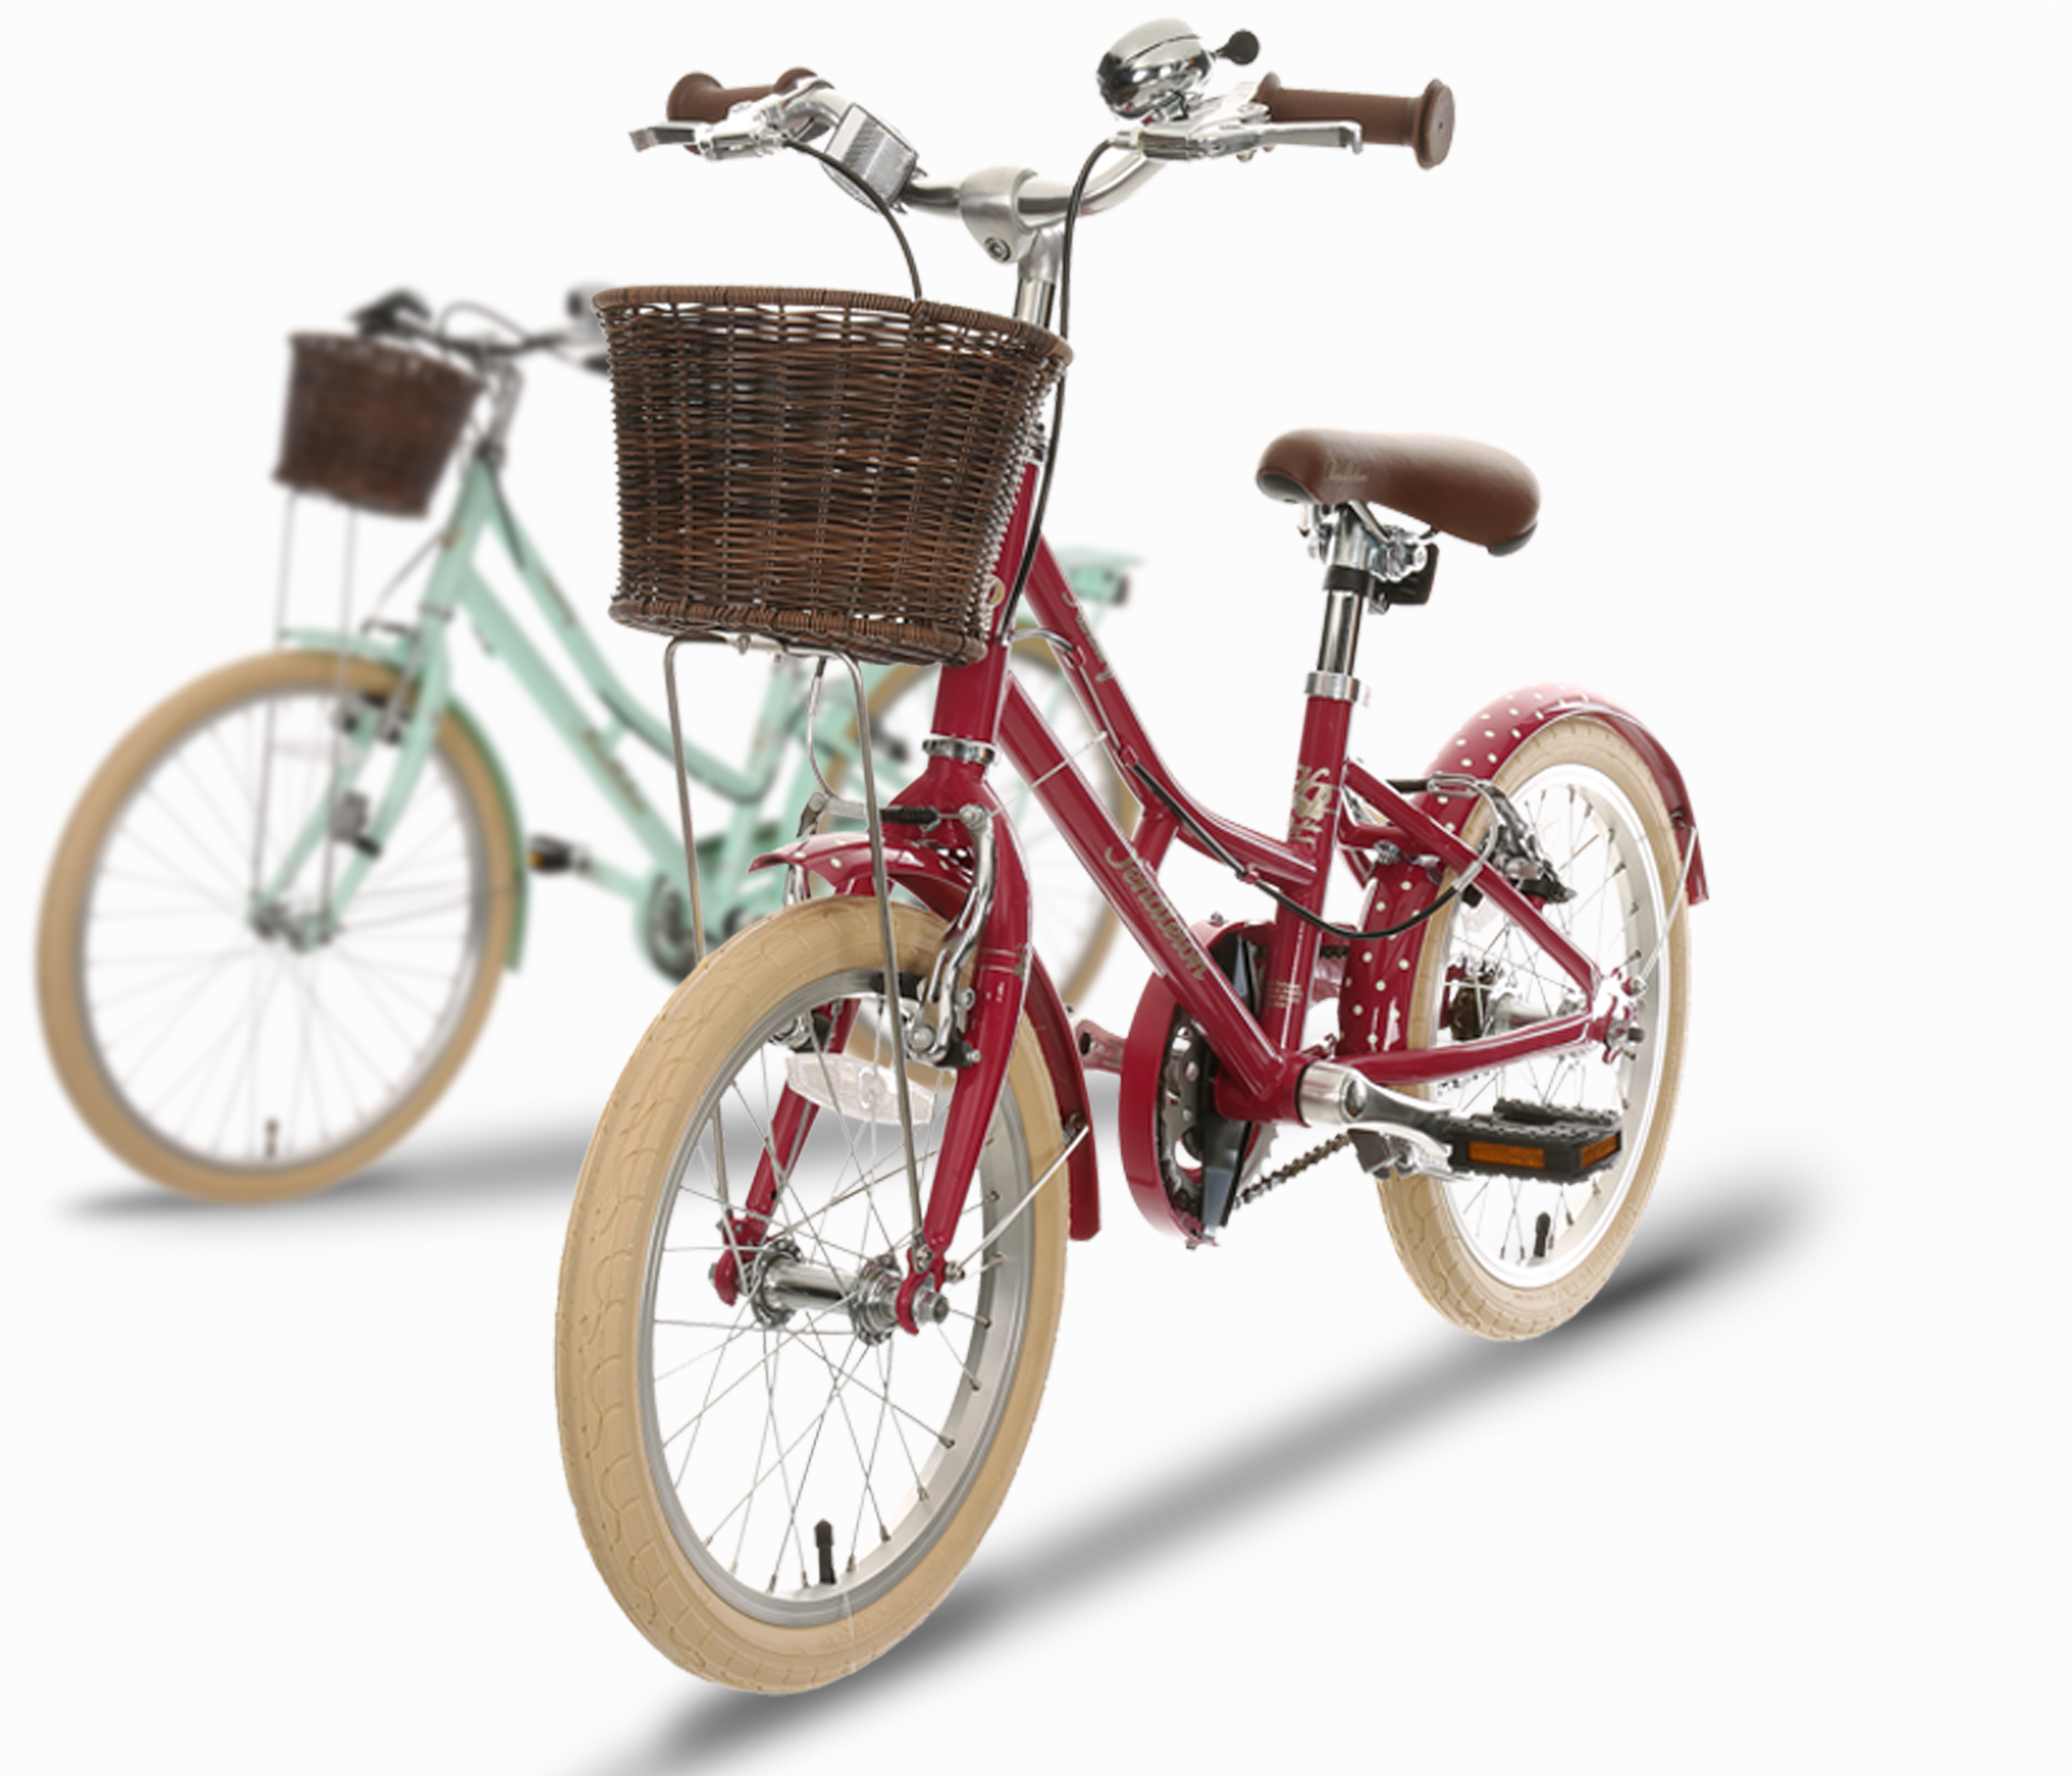 halfords children's bicycles